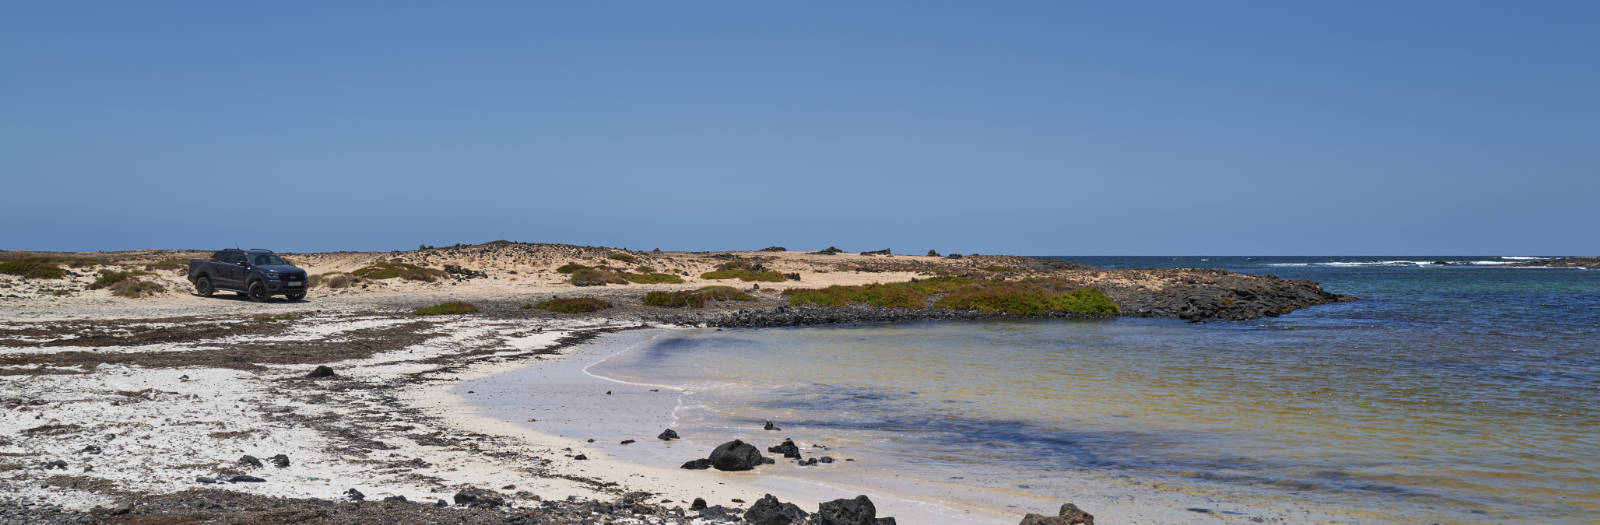 Caleta de Beatriz Northshore Fuerteventura.